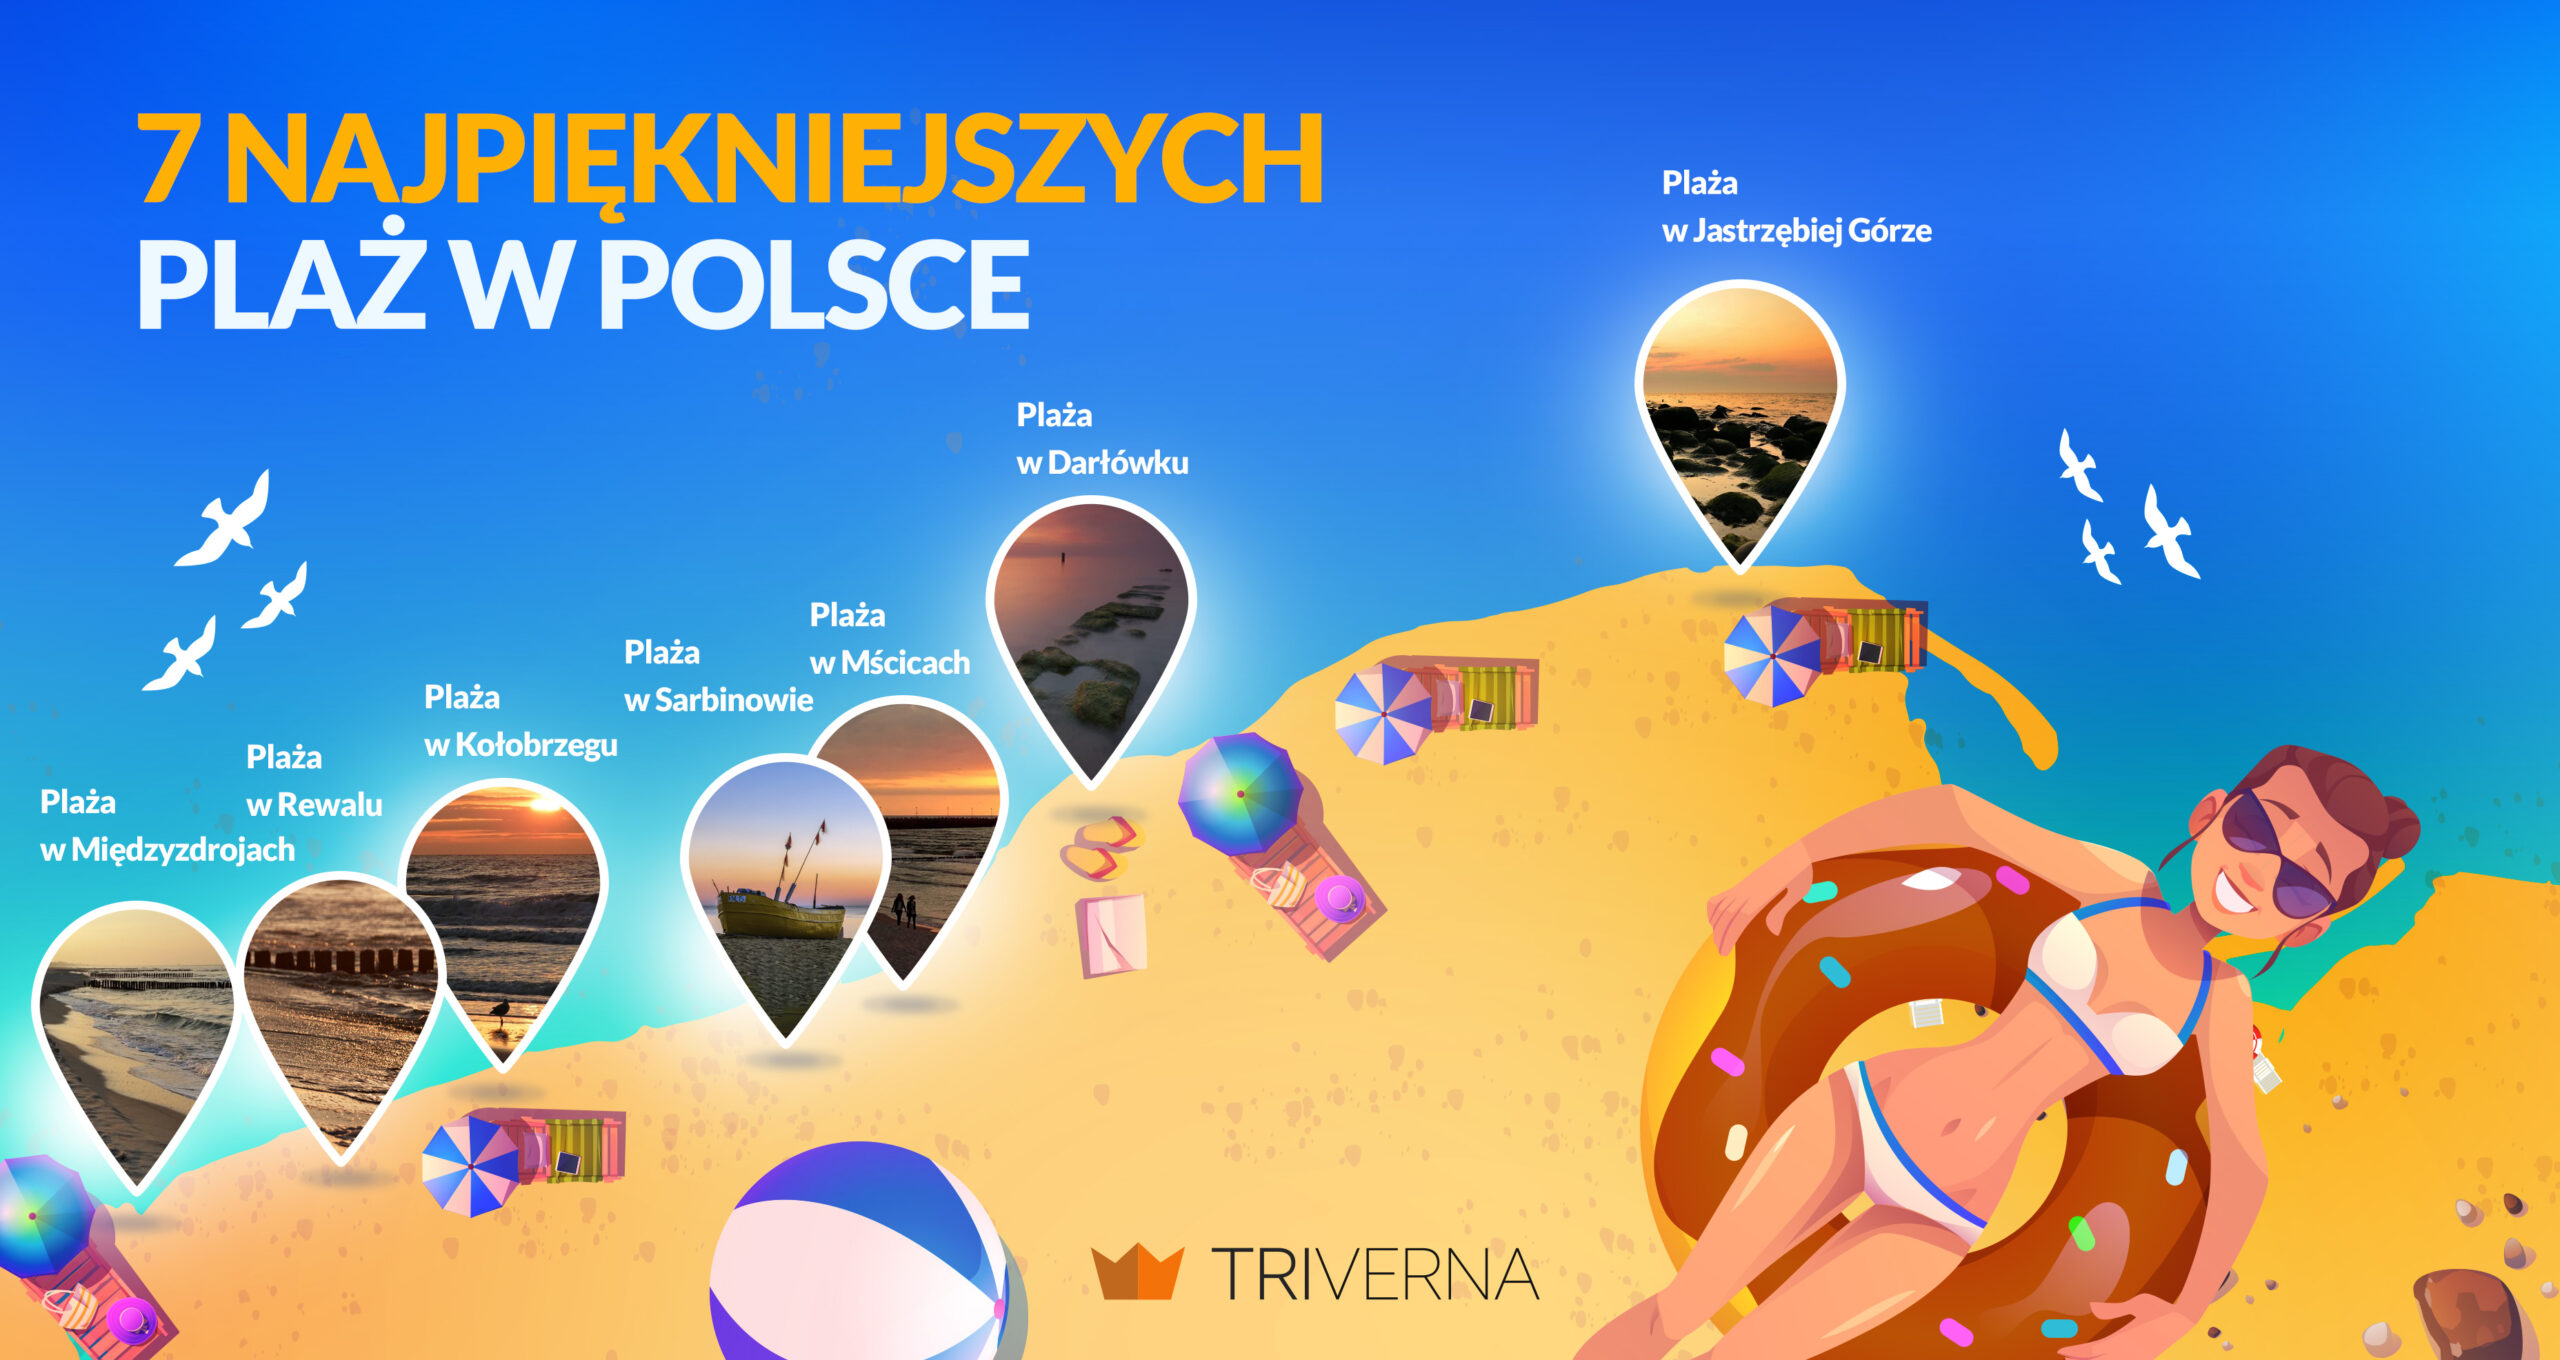 7 najpiękniejszych plaż w Polsce – infografika
